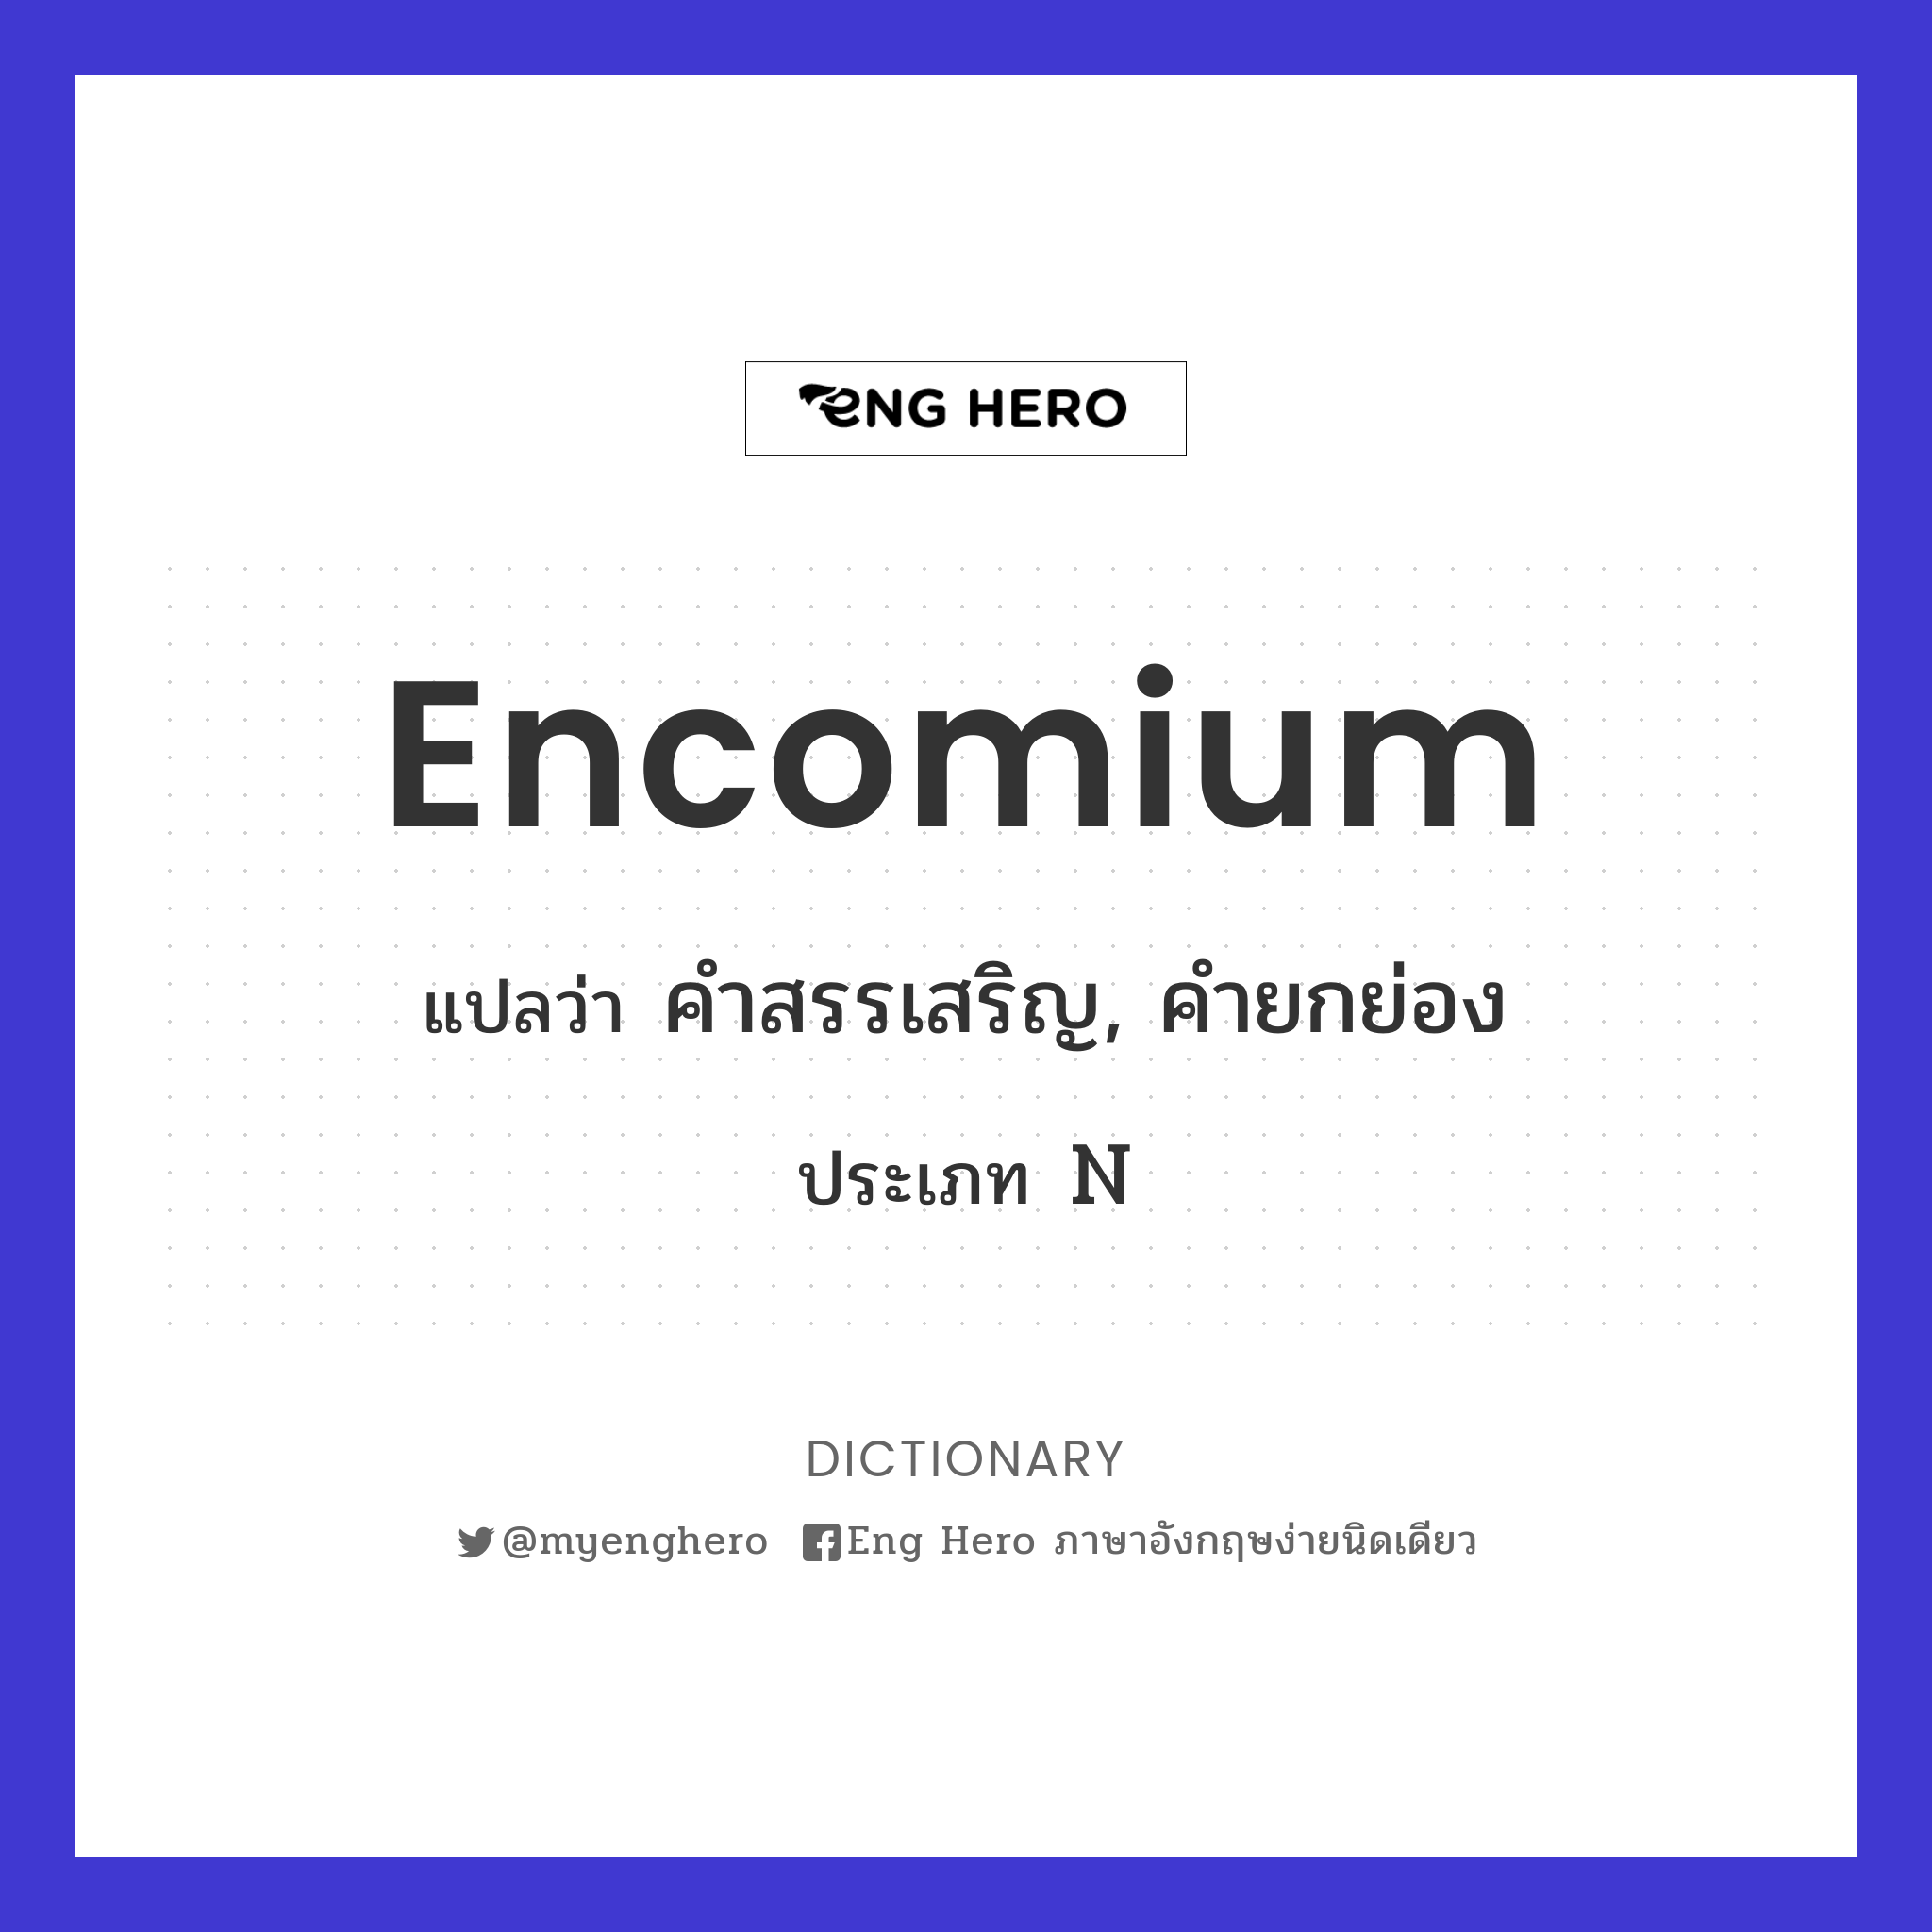 encomium